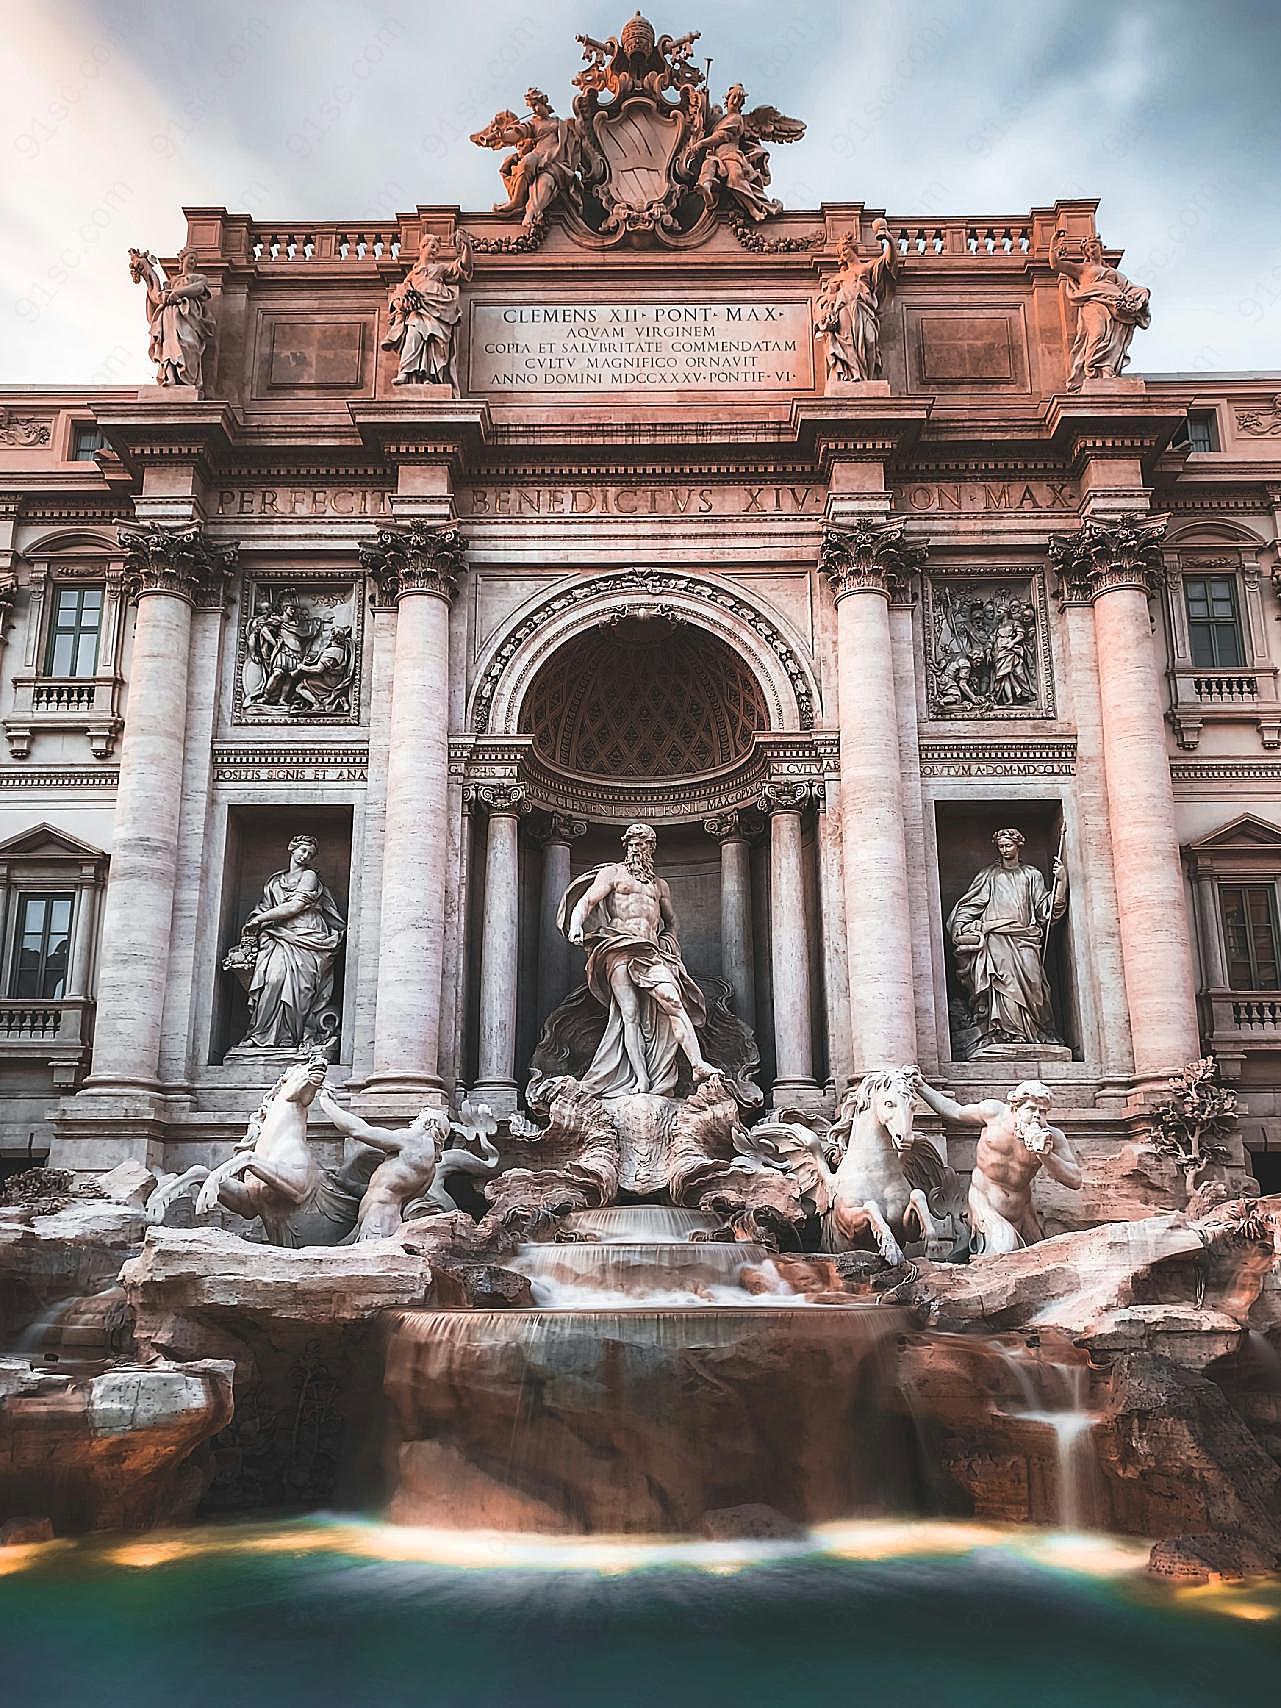 意大利罗马许愿池图片特色建筑